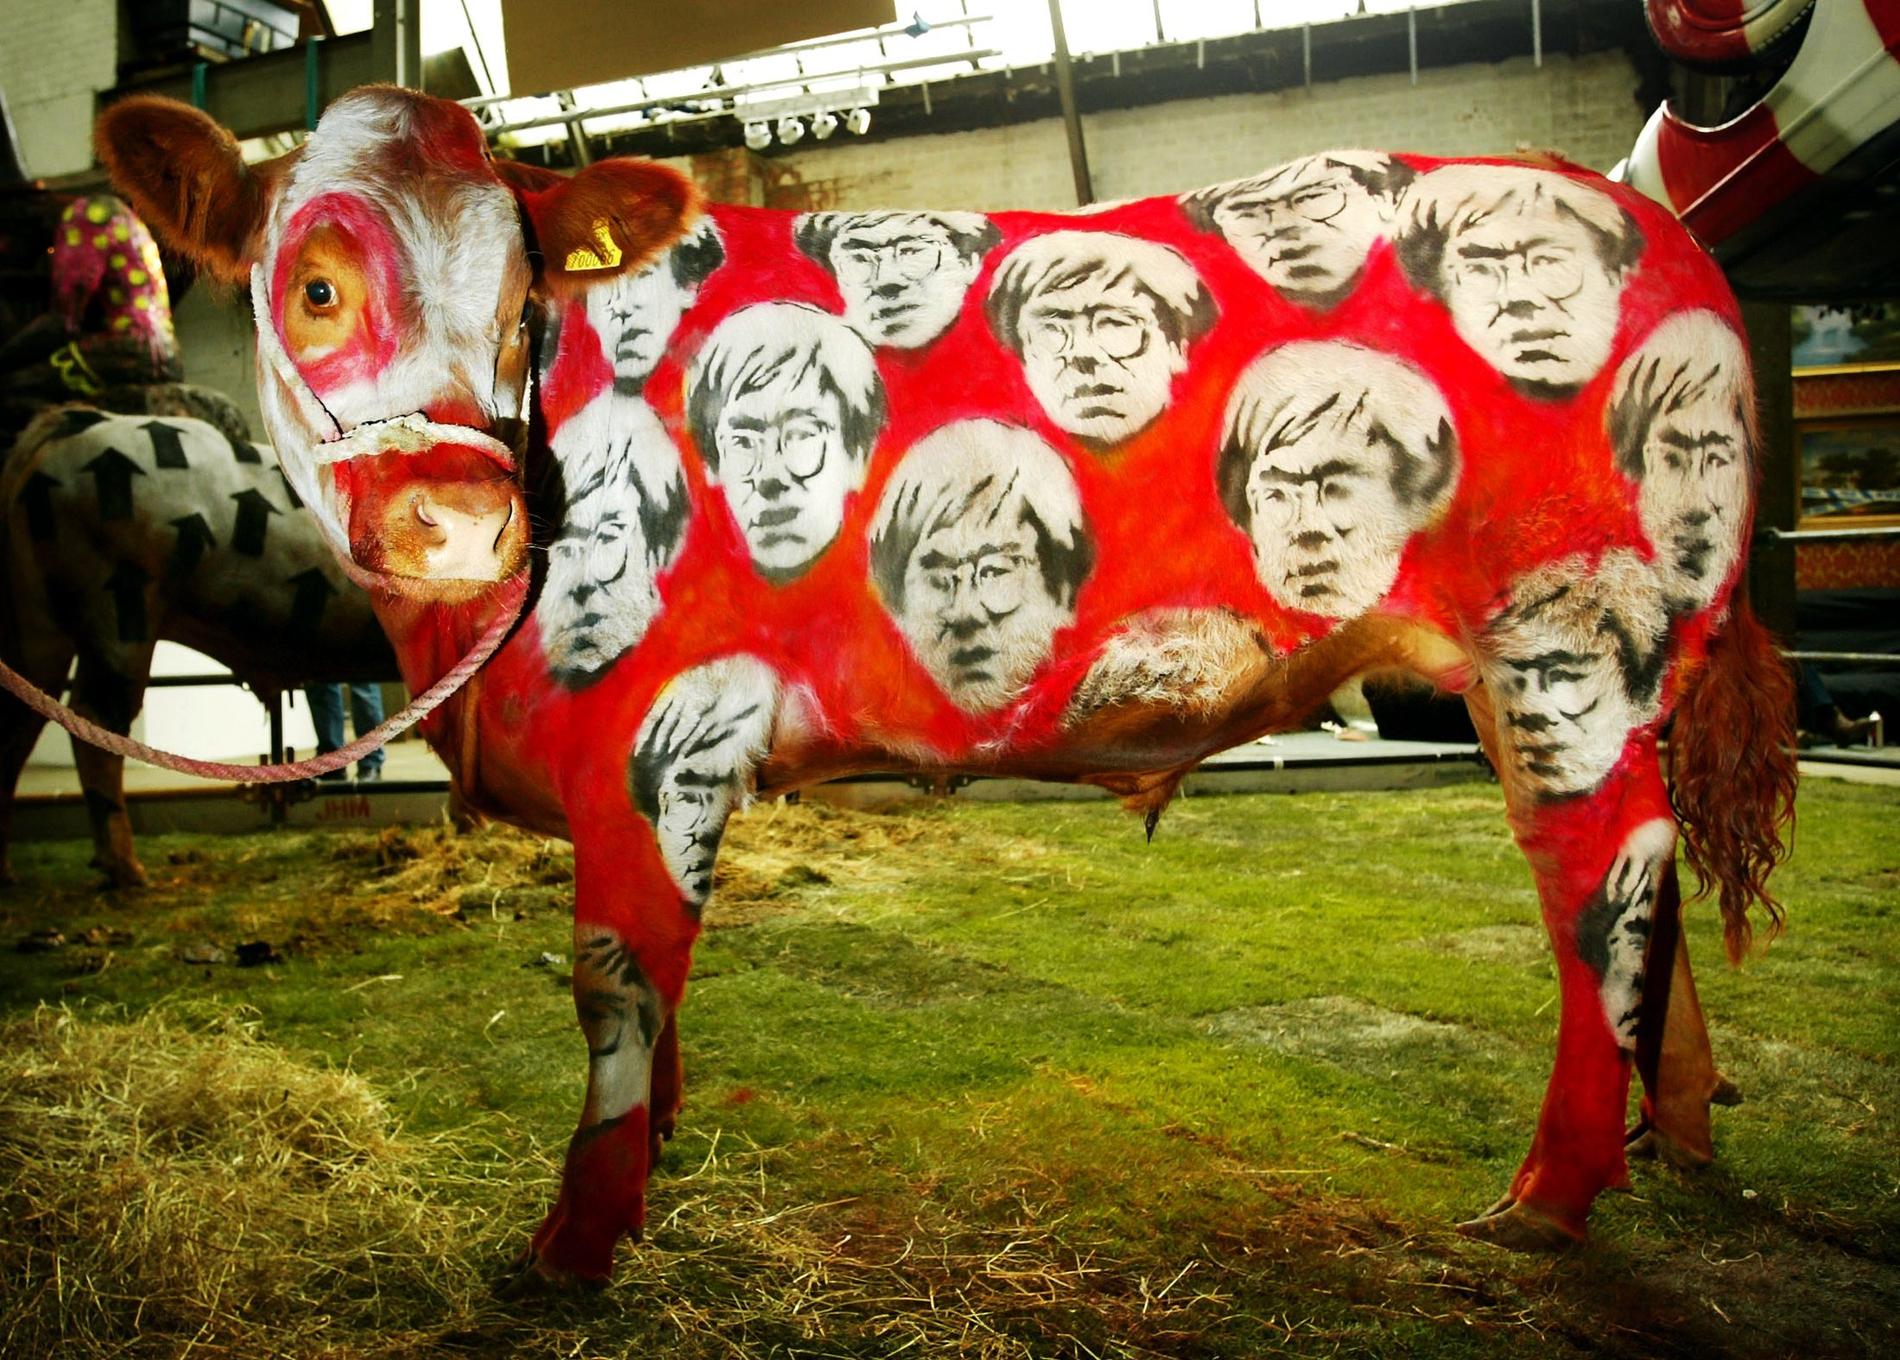 KUNSTKU: Banksy har også dekorert levende dyr, som denne rødmalte kuen med portretter av Andy Warhol.